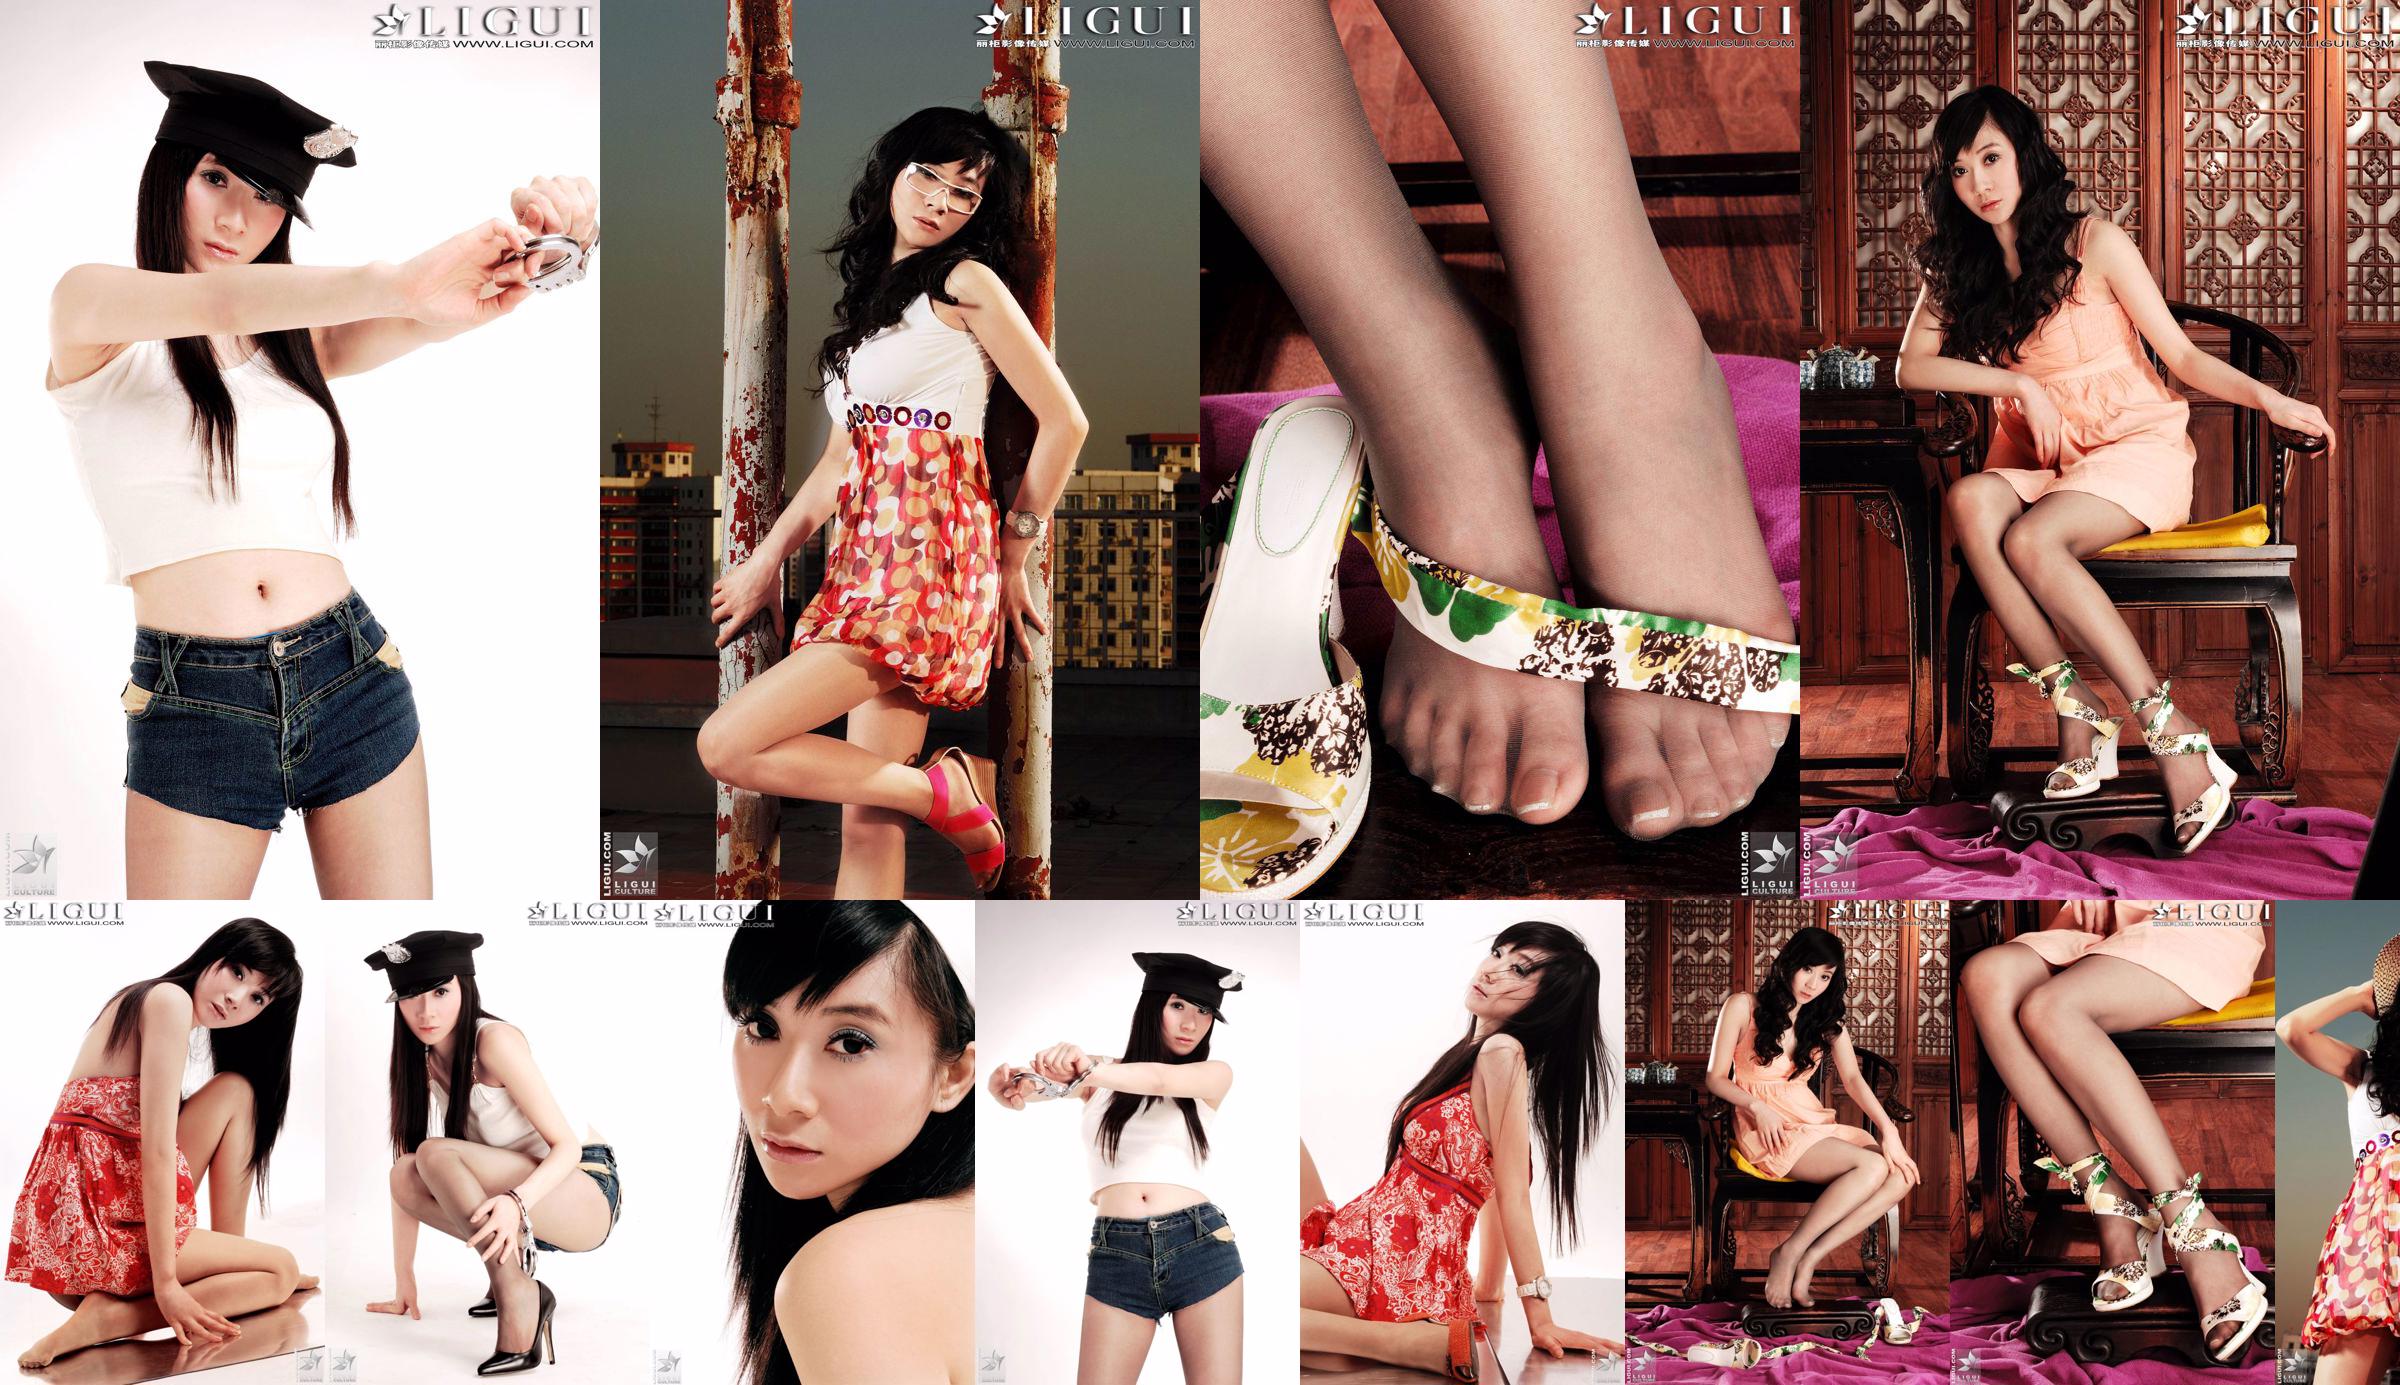 [丽柜LiGui] Model Jinxin Silky Foot and Beautiful Legs Photo Picture No.366df8 Page 1